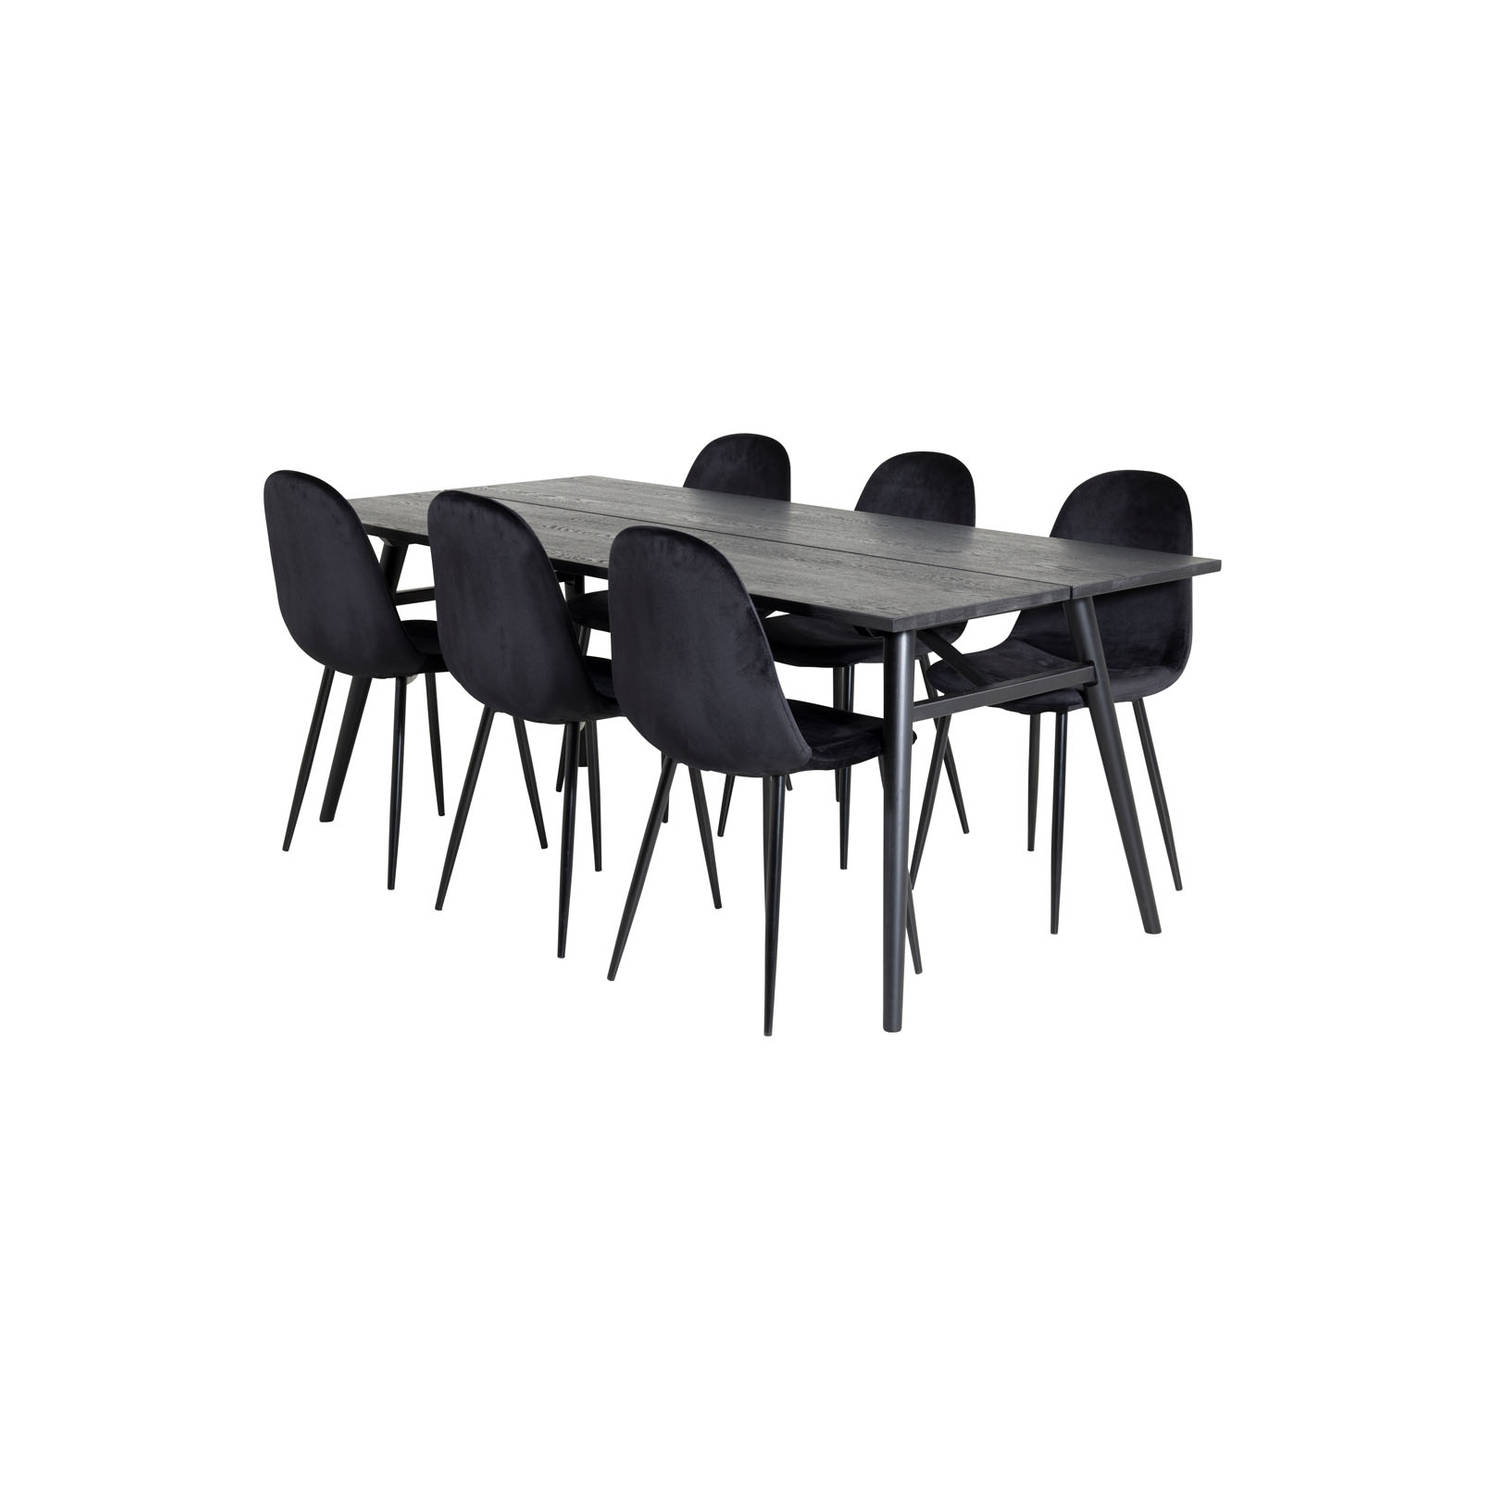 Sleek eethoek eetkamertafel uitschuifbare tafel lengte cm 195 / 280 zwart en 6 Polar eetkamerstal velours zwart.